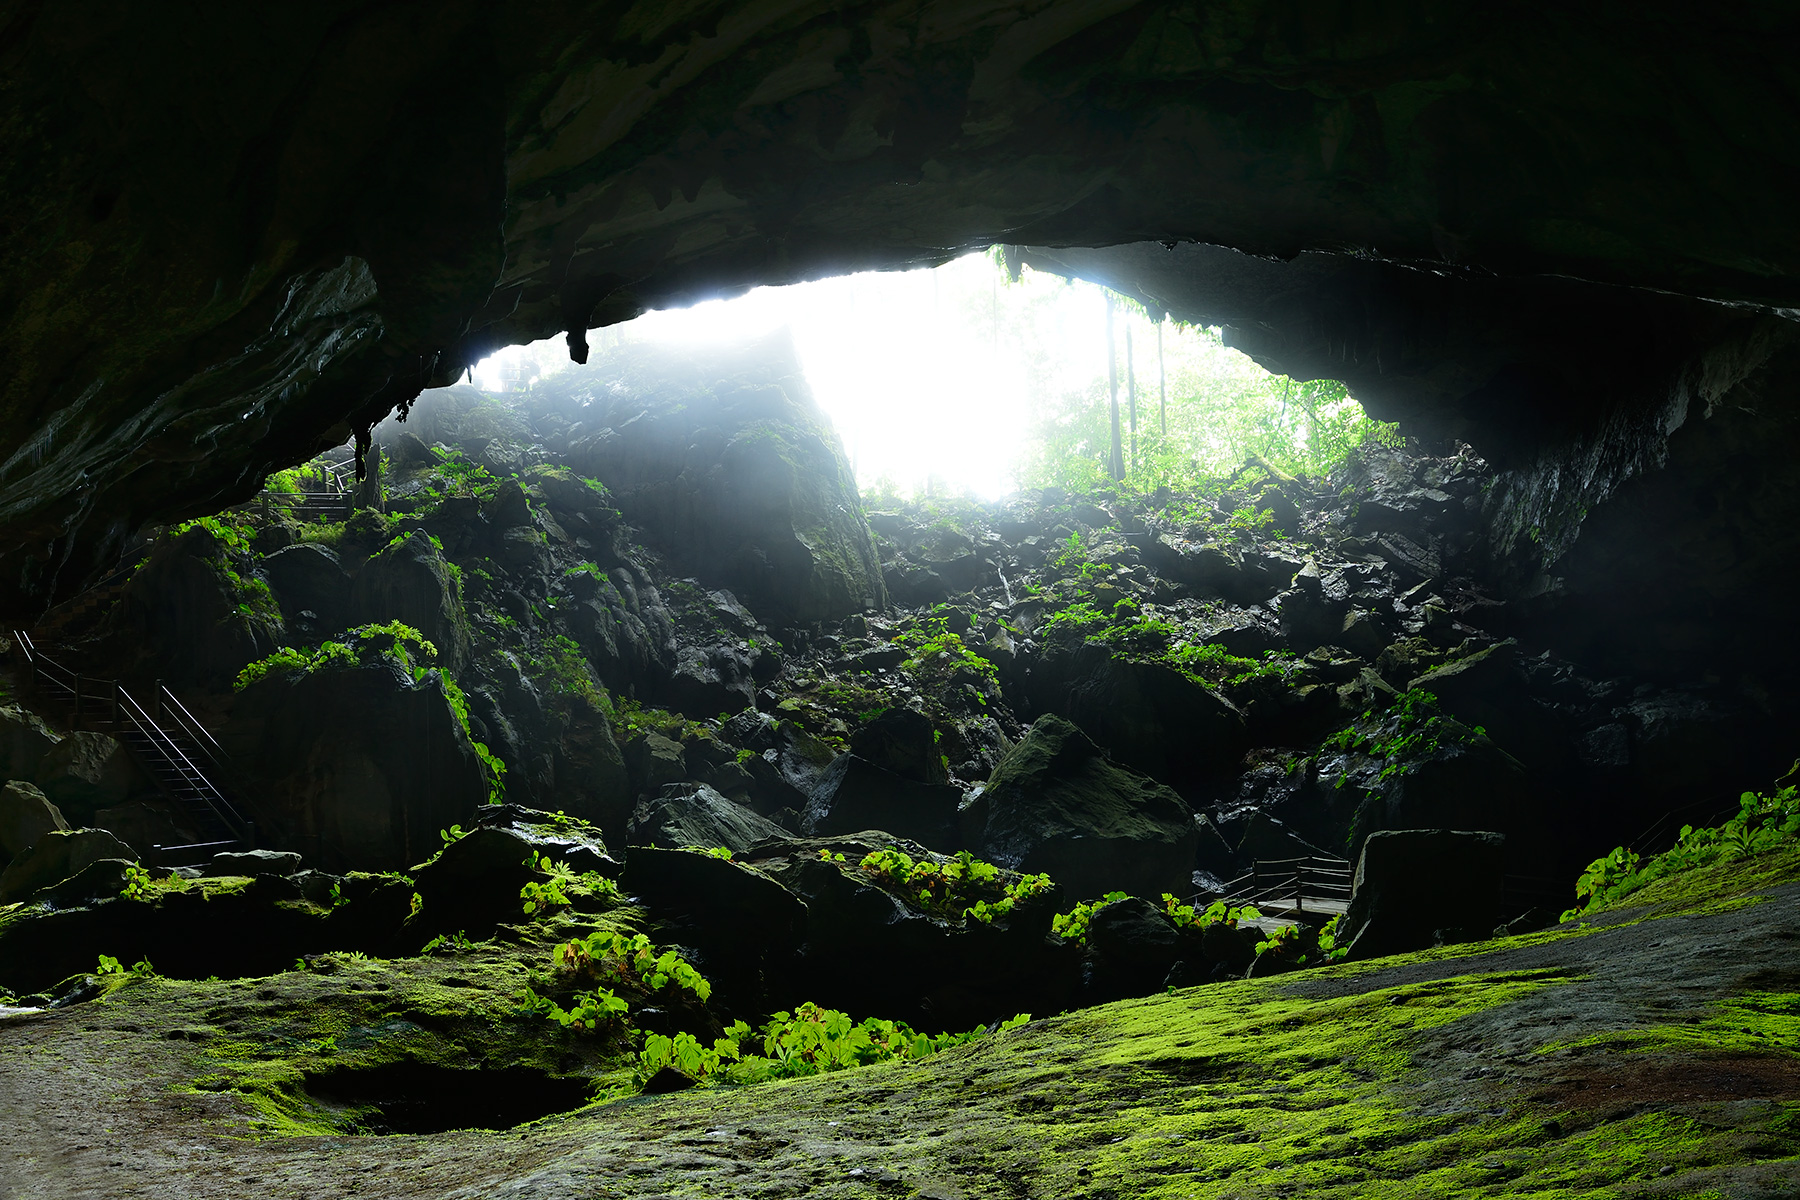 Clearwater Cave (Gunung Mulu National Park, Bornéo, Malaisie) - Porche d'entrée vu de l'intérieur de la grotte.